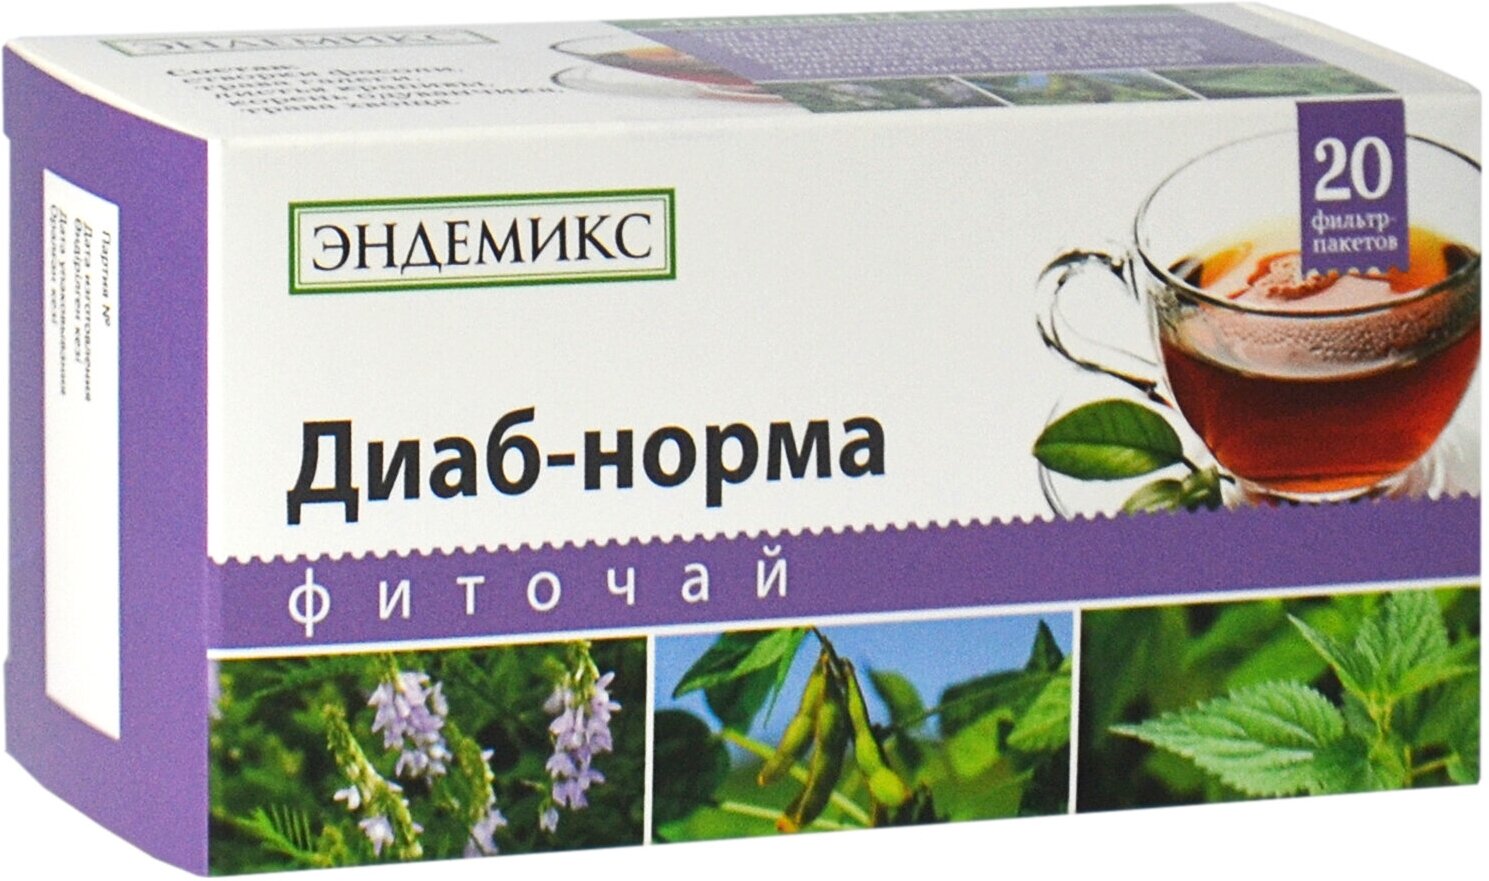 Травяной чай Эндемикс в пакетиках «Диаб-норма» при диабете для нормализации сахара в крови эластичности сосудов 20 шт.